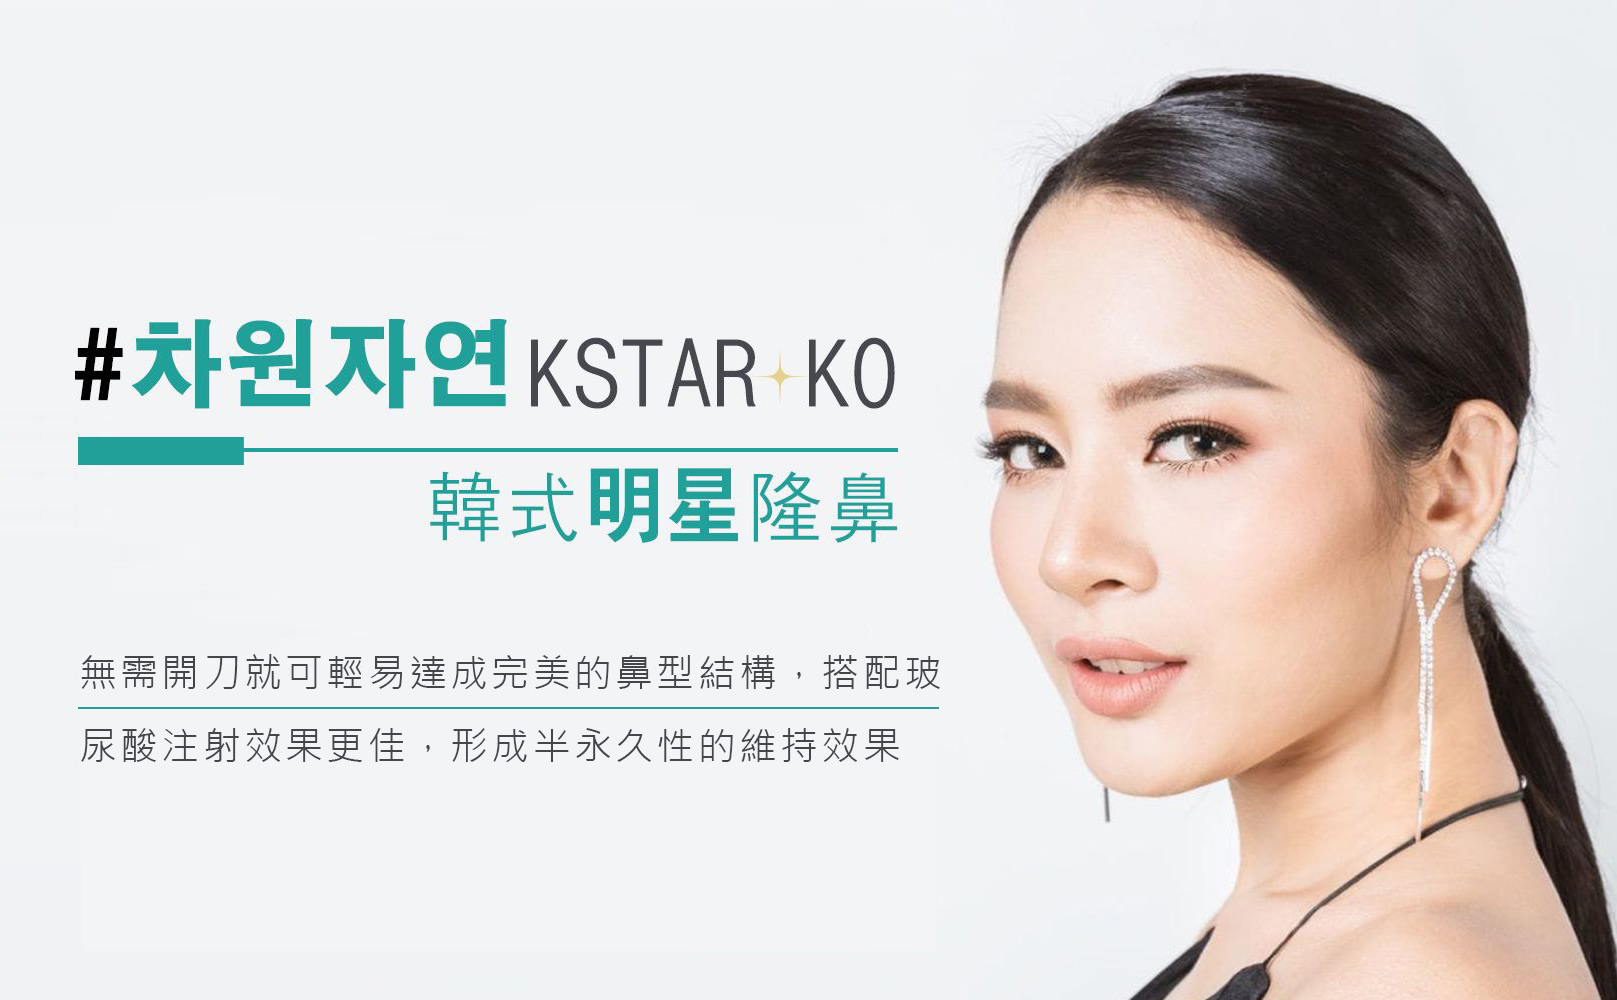 韓后醫美 K-STAR KO韓式明星隆鼻：無需開刀就可輕易達成完美的鼻型結構，搭配玻尿酸注射效果更佳，形成半永久性的維持效果。